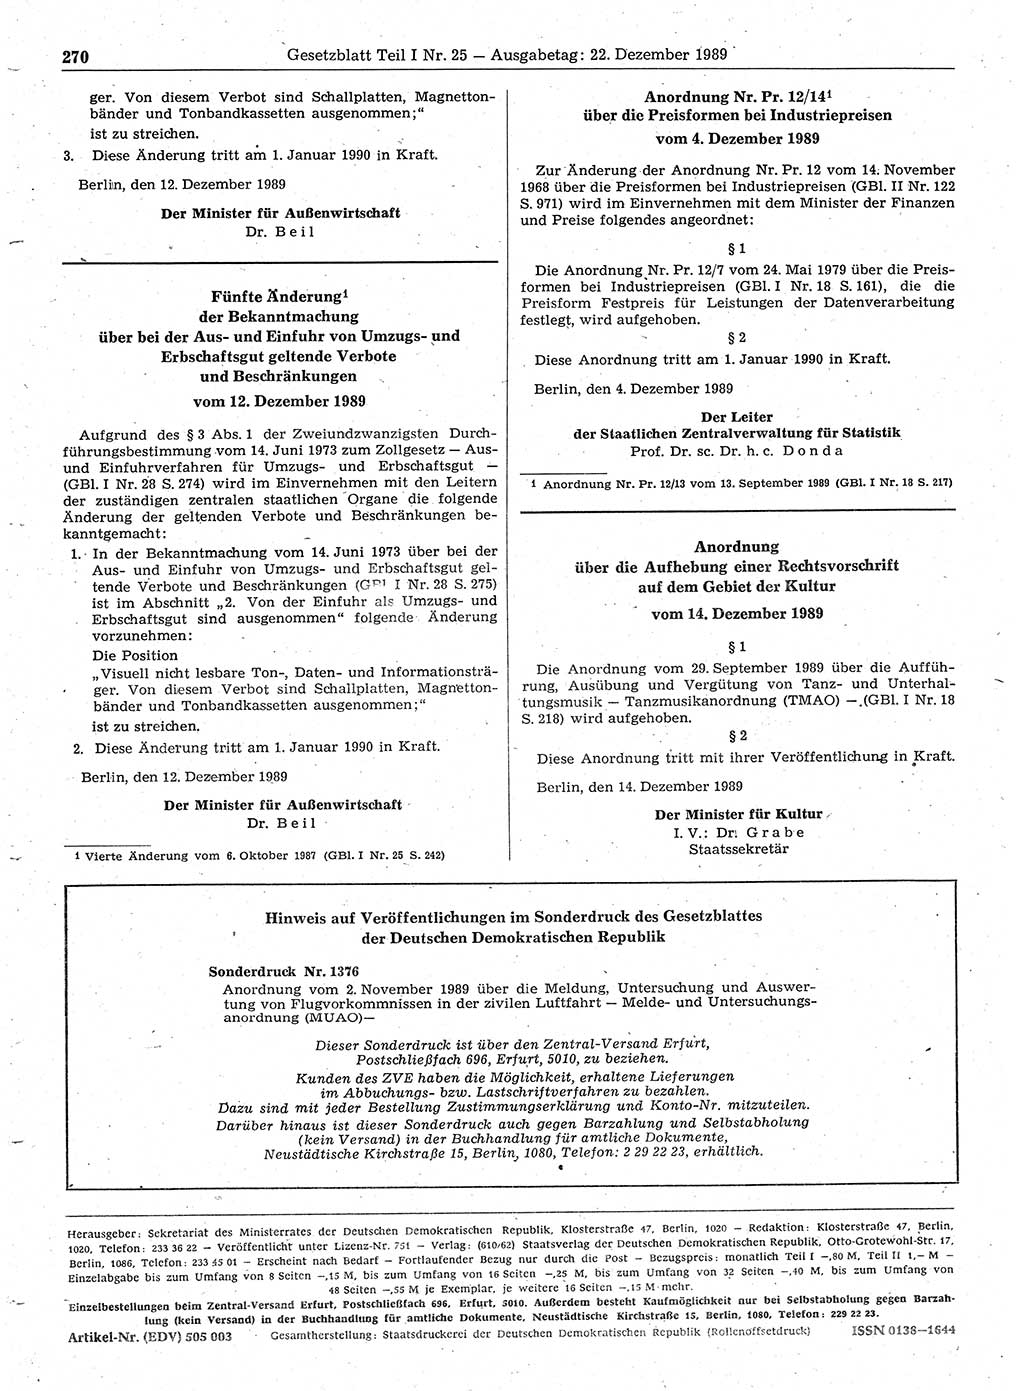 Gesetzblatt (GBl.) der Deutschen Demokratischen Republik (DDR) Teil Ⅰ 1989, Seite 270 (GBl. DDR Ⅰ 1989, S. 270)